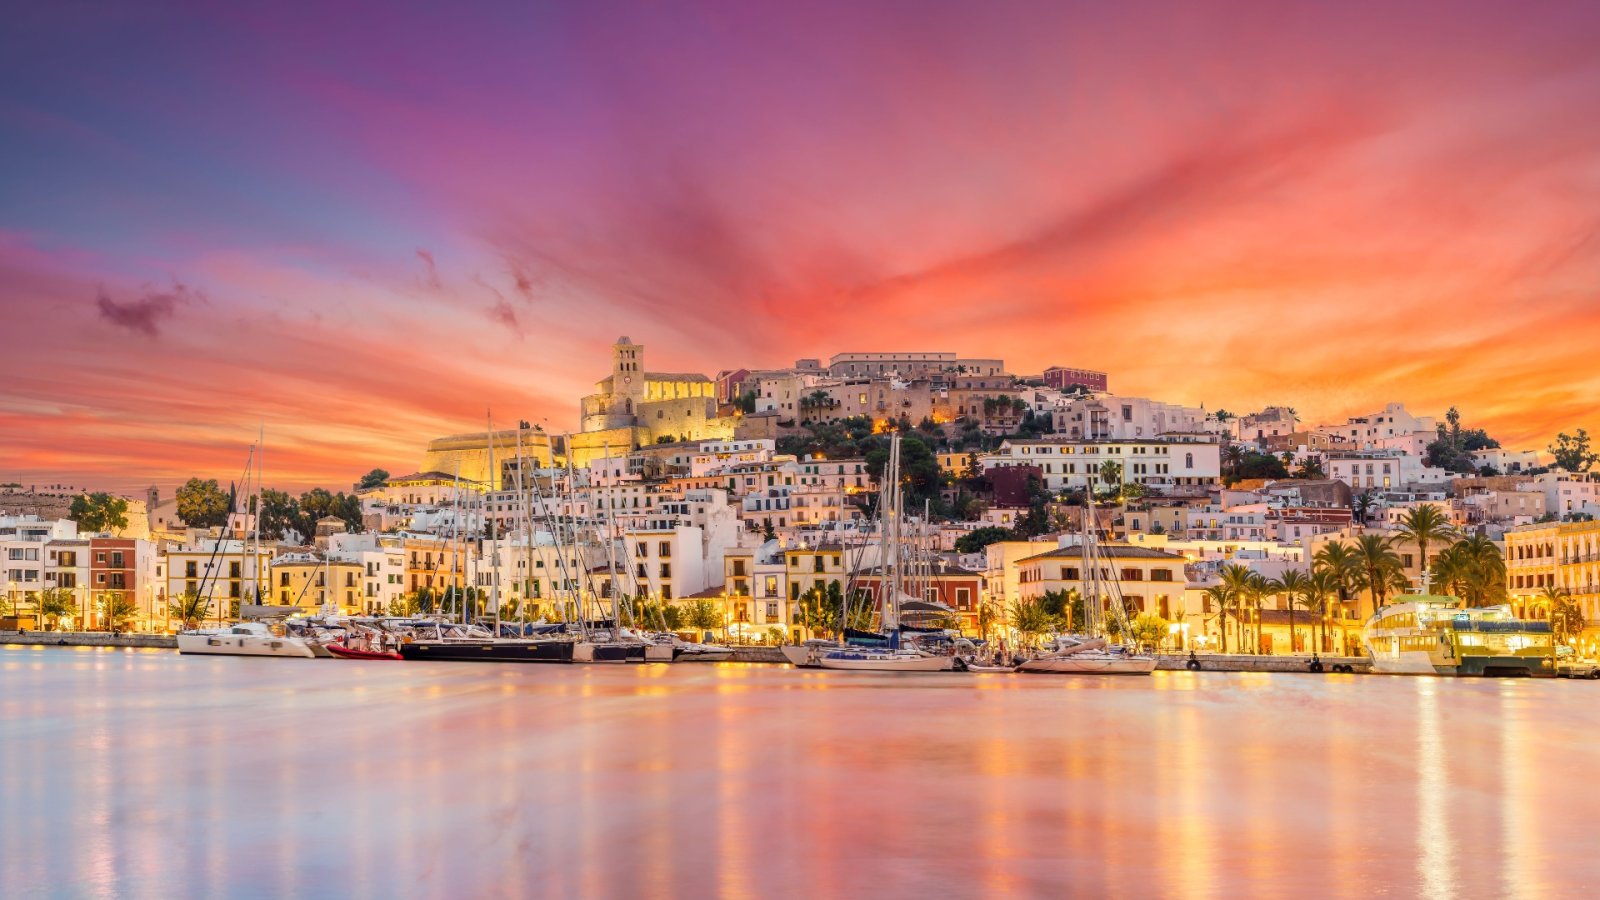 Um guia turístico para a parte desconhecida da mágica Ibiza - seu próximo destino